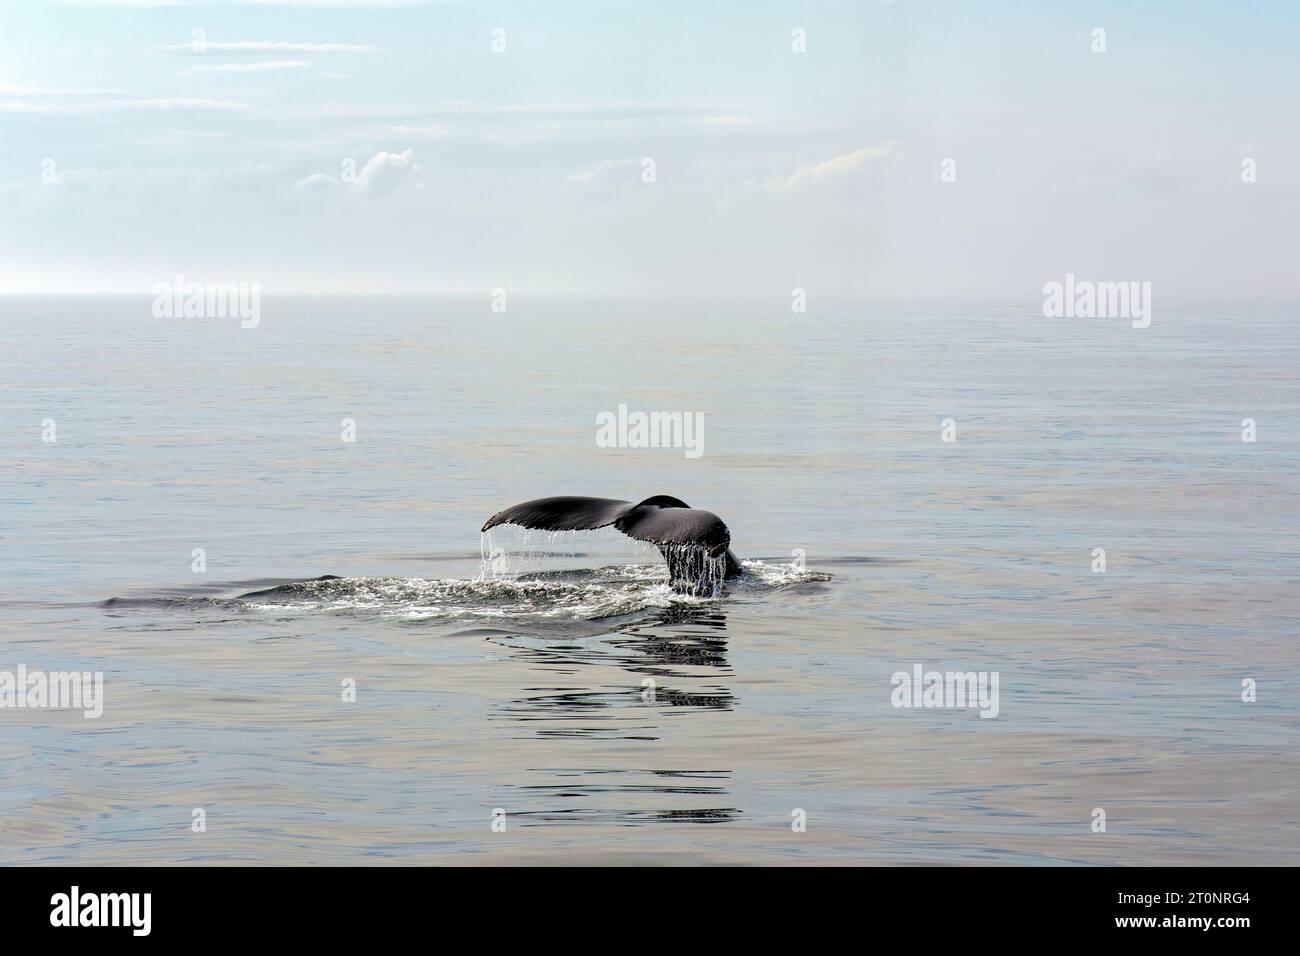 il trematode di una balena megattera oltrepassa la placida superficie oceanica in una tranquilla mattinata estiva nel Golfo del Maine. Foto Stock